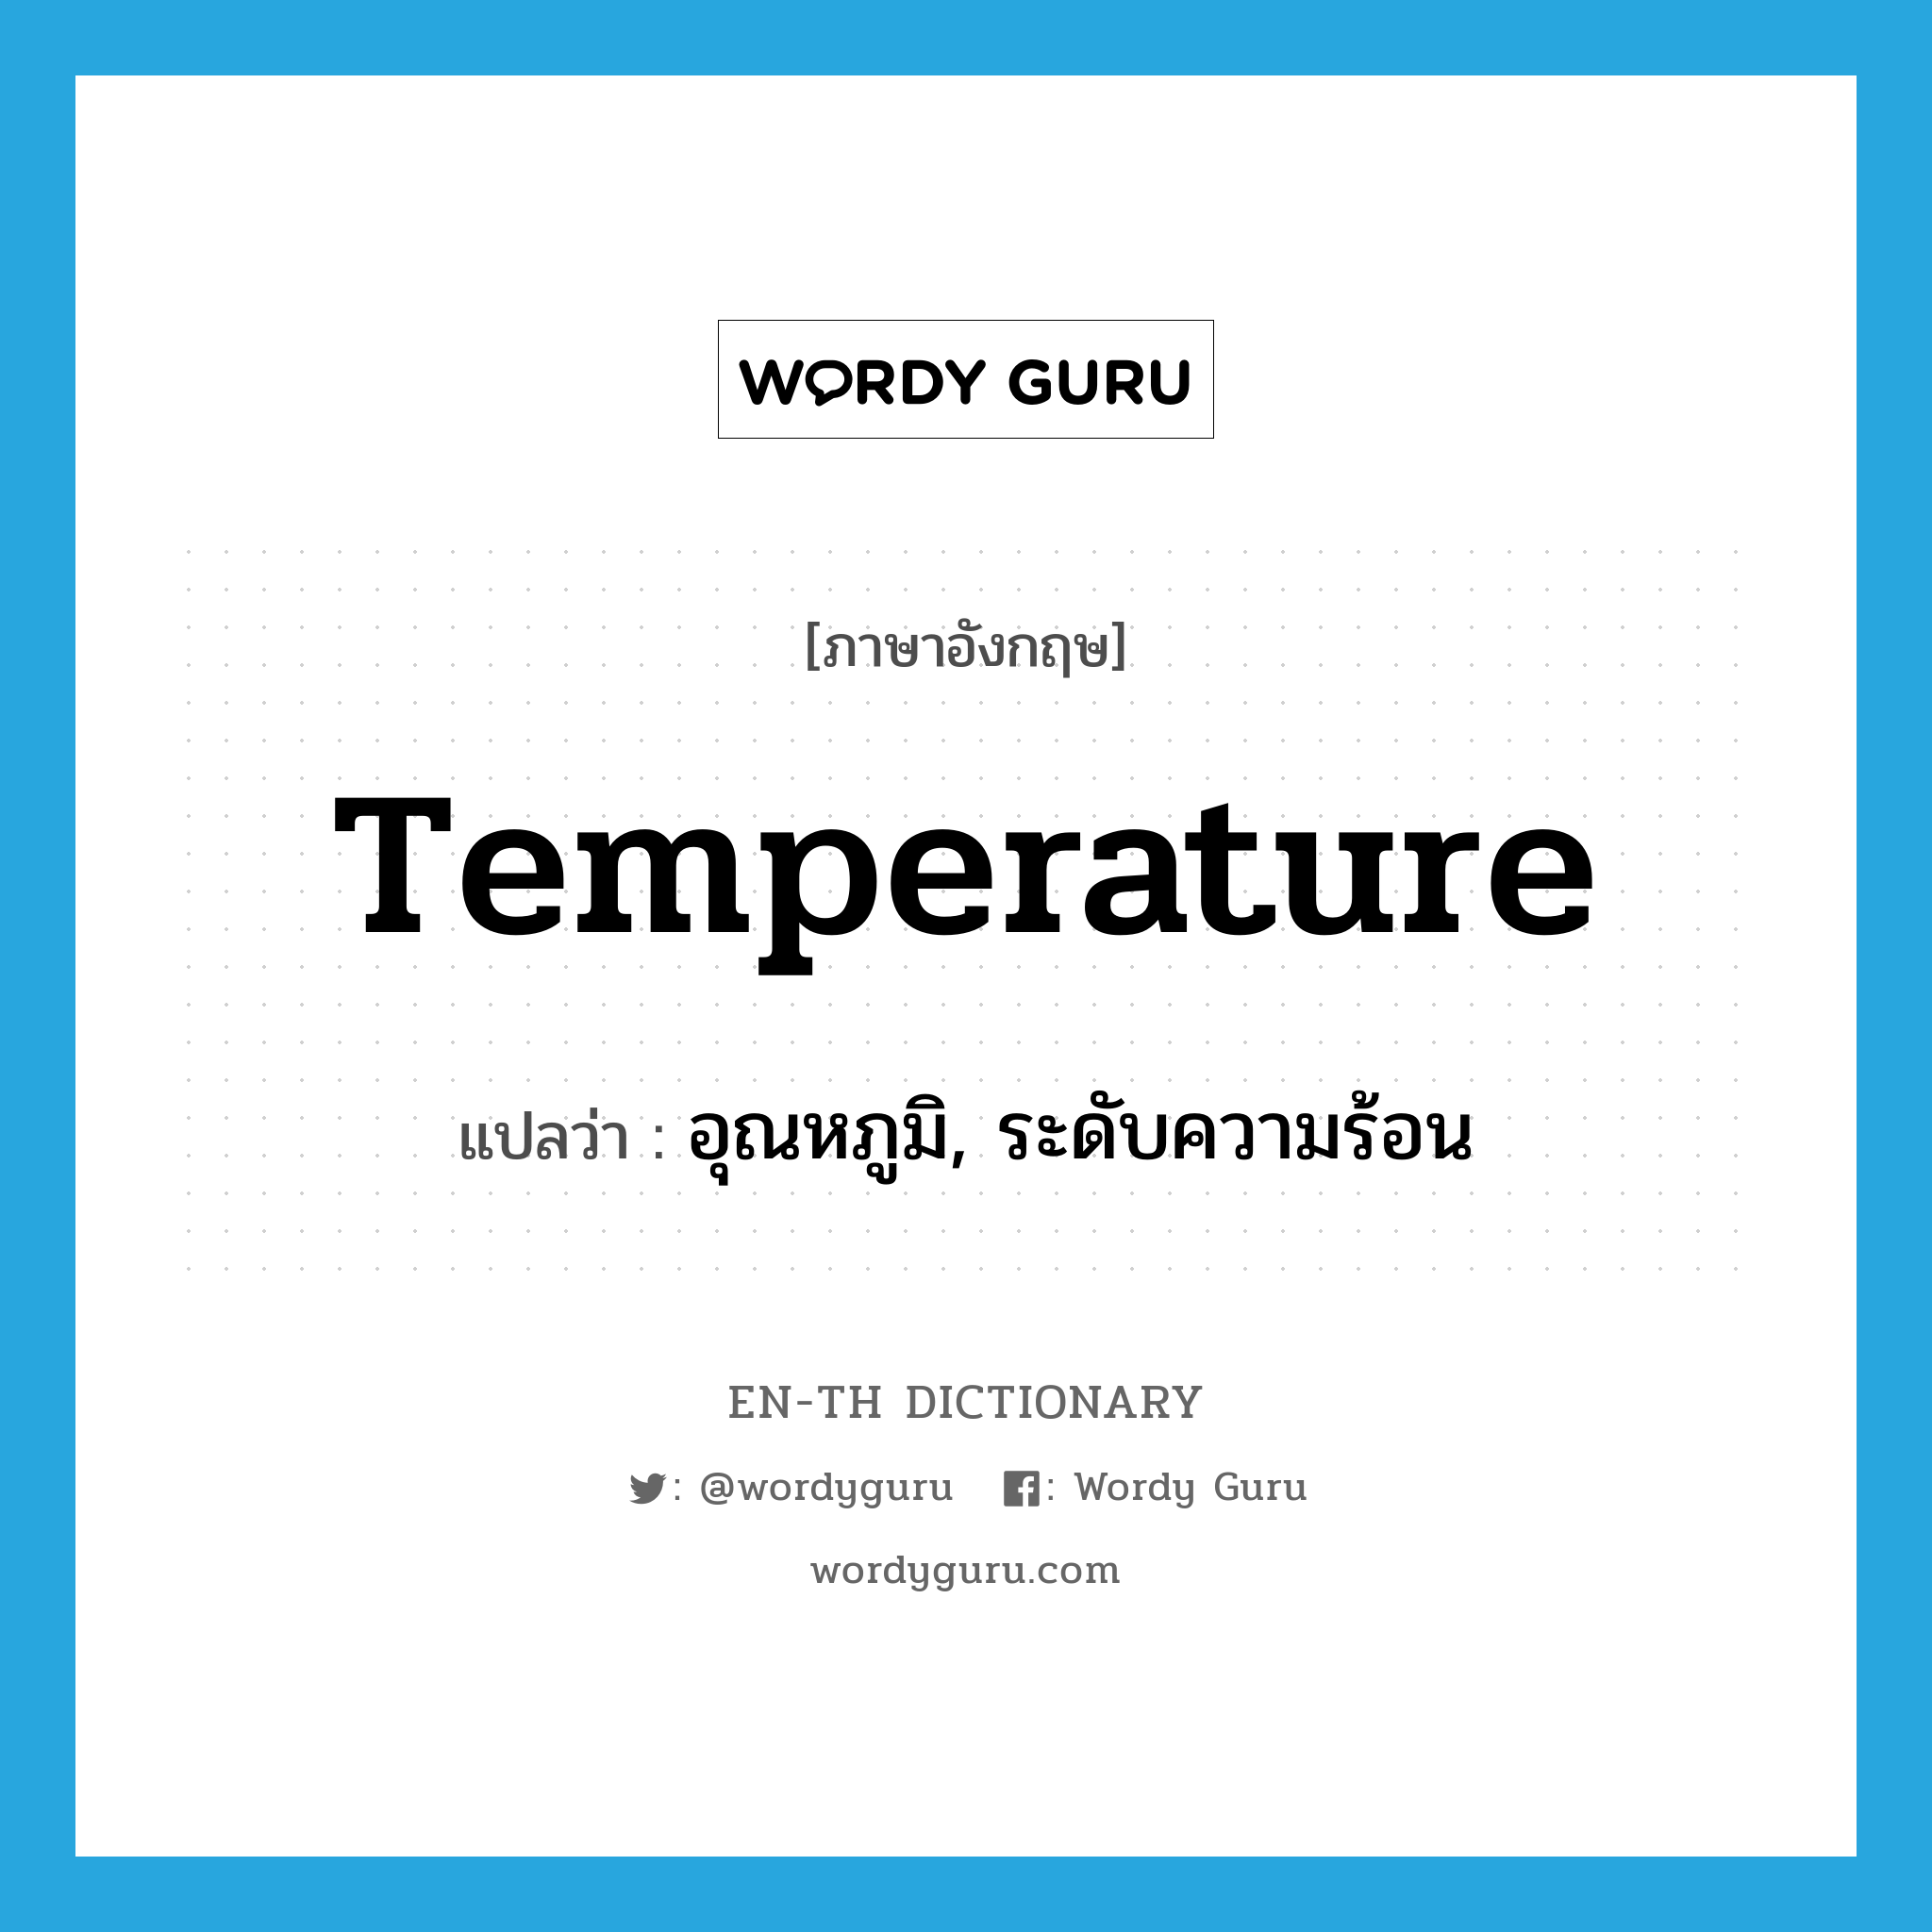 อุณหภูมิ, ระดับความร้อน ภาษาอังกฤษ?, คำศัพท์ภาษาอังกฤษ อุณหภูมิ, ระดับความร้อน แปลว่า temperature ประเภท N หมวด N